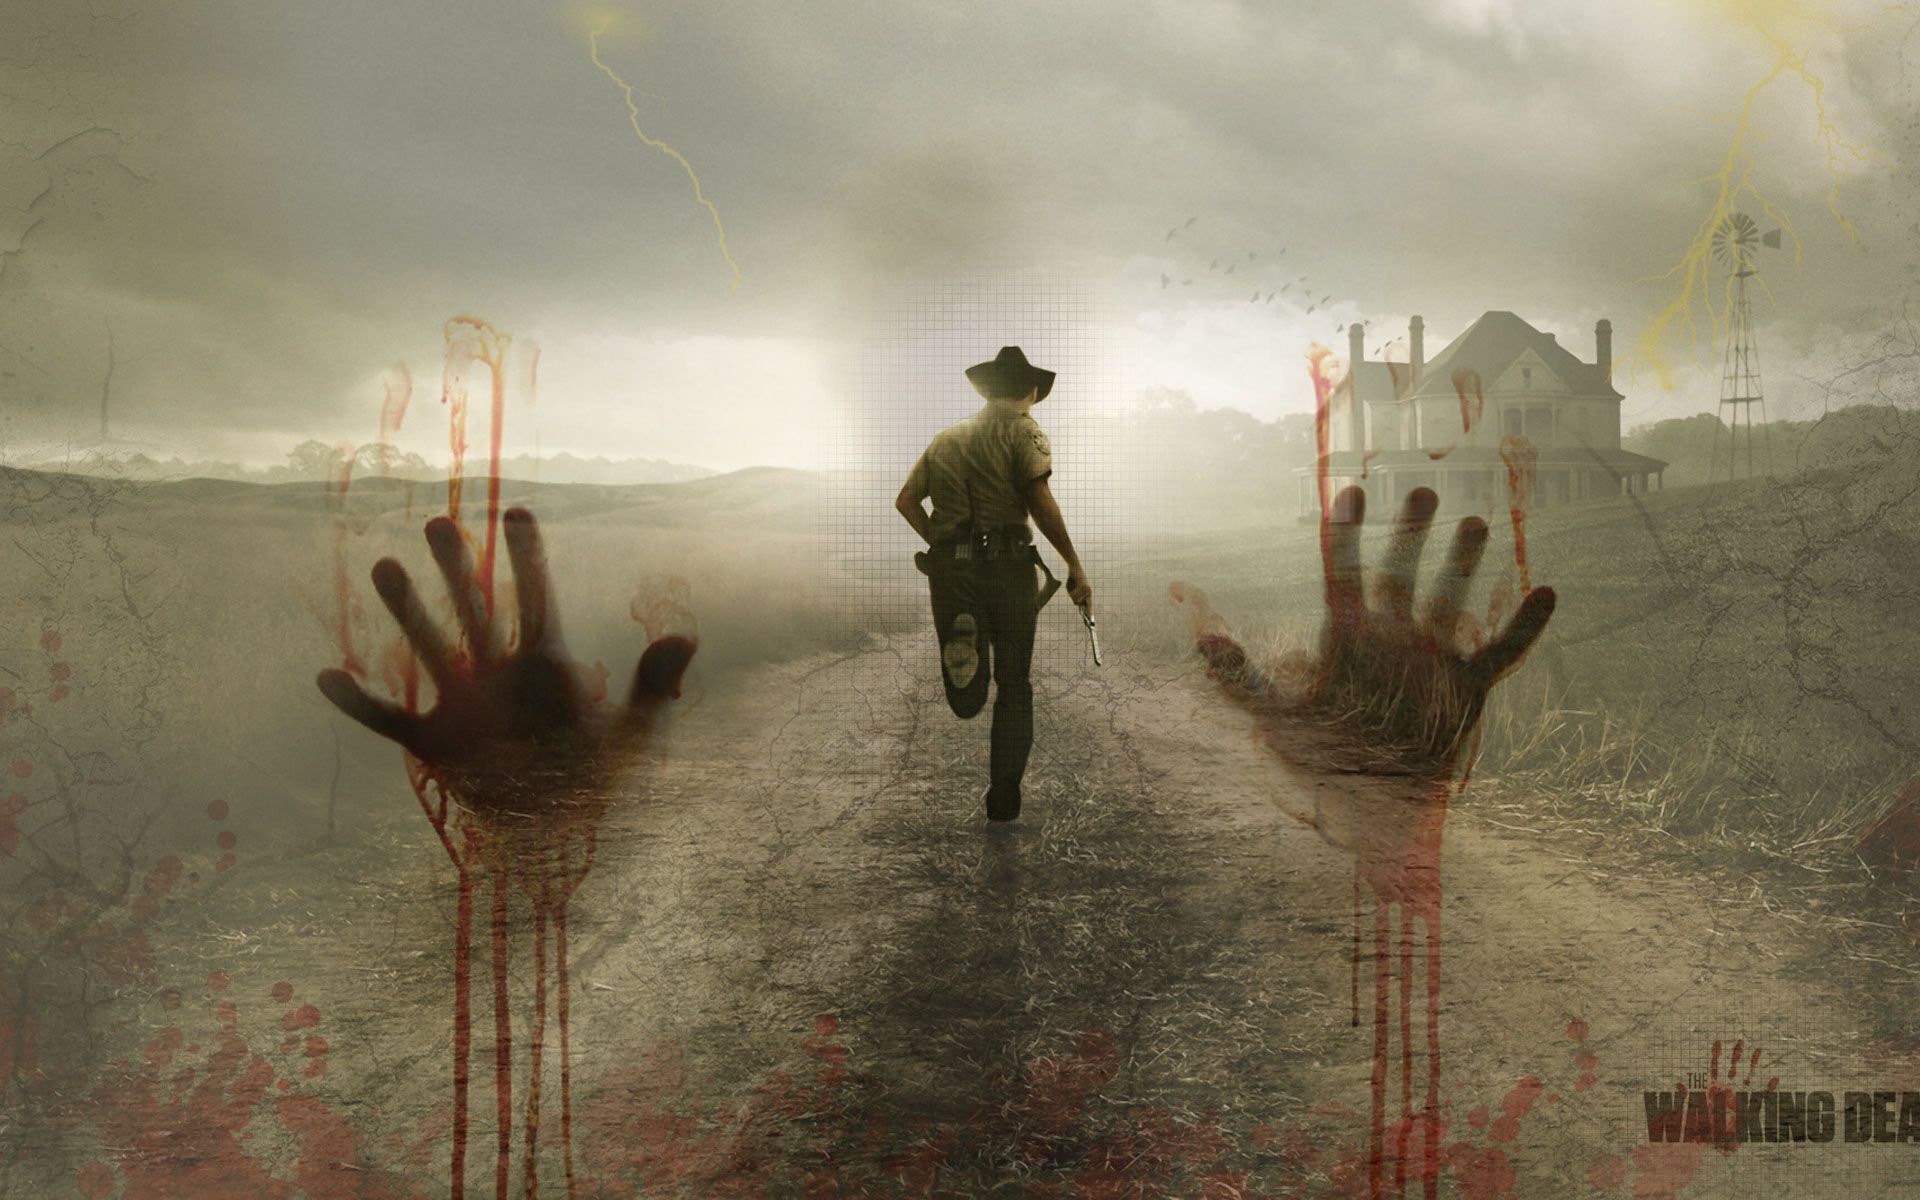 The Walking Dead Computer Wallpapers, Desktop Backgrounds